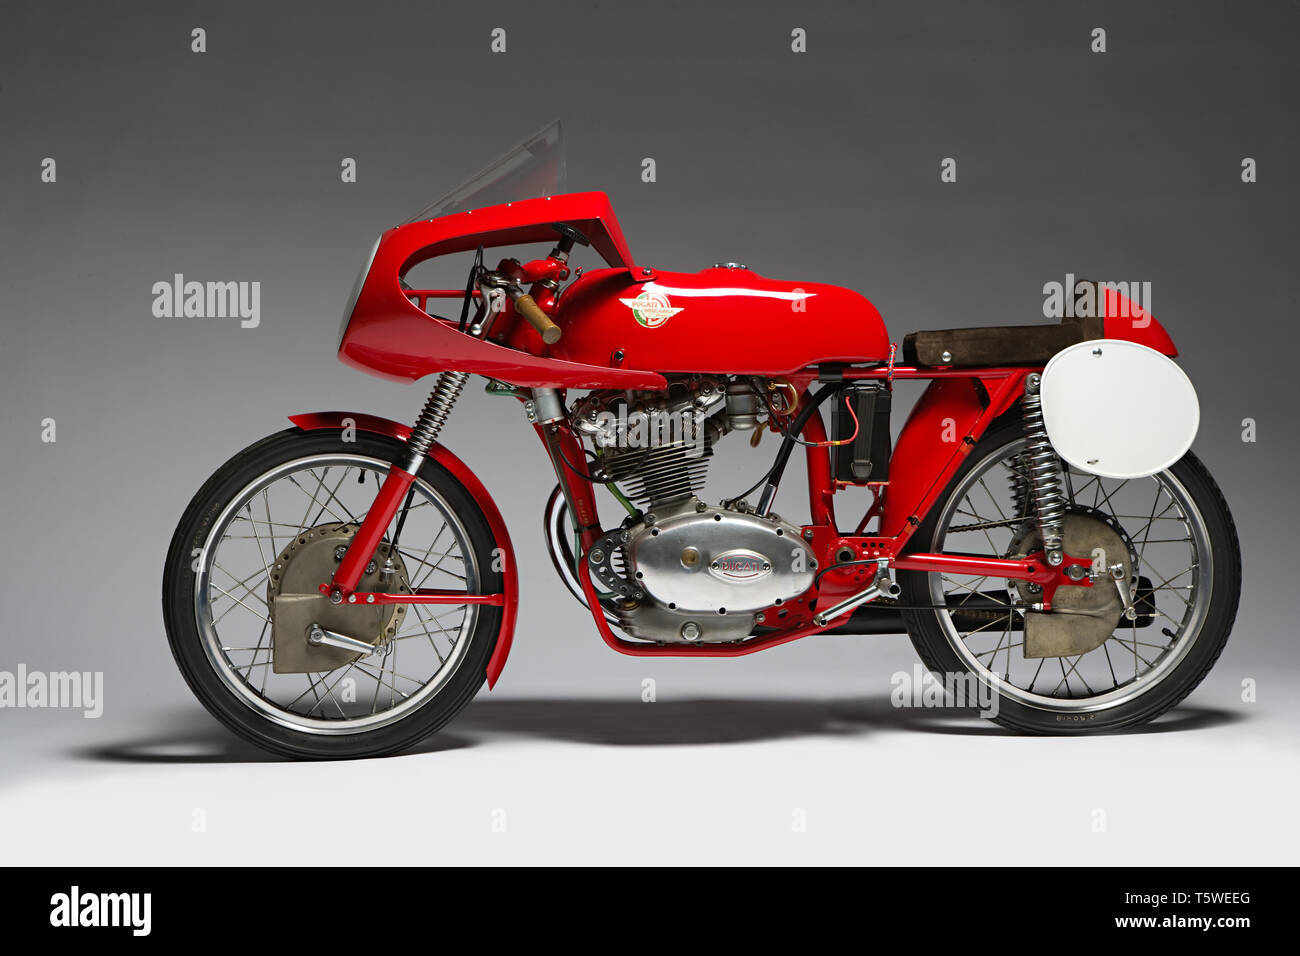 Moto d'epoca Ducati 125 Bialbero Gran Premio Marca: Ducati modello: 125 Bialbero Gran Premio nazione: Italien - Bologna Anno: 1956 condizi Stockfoto